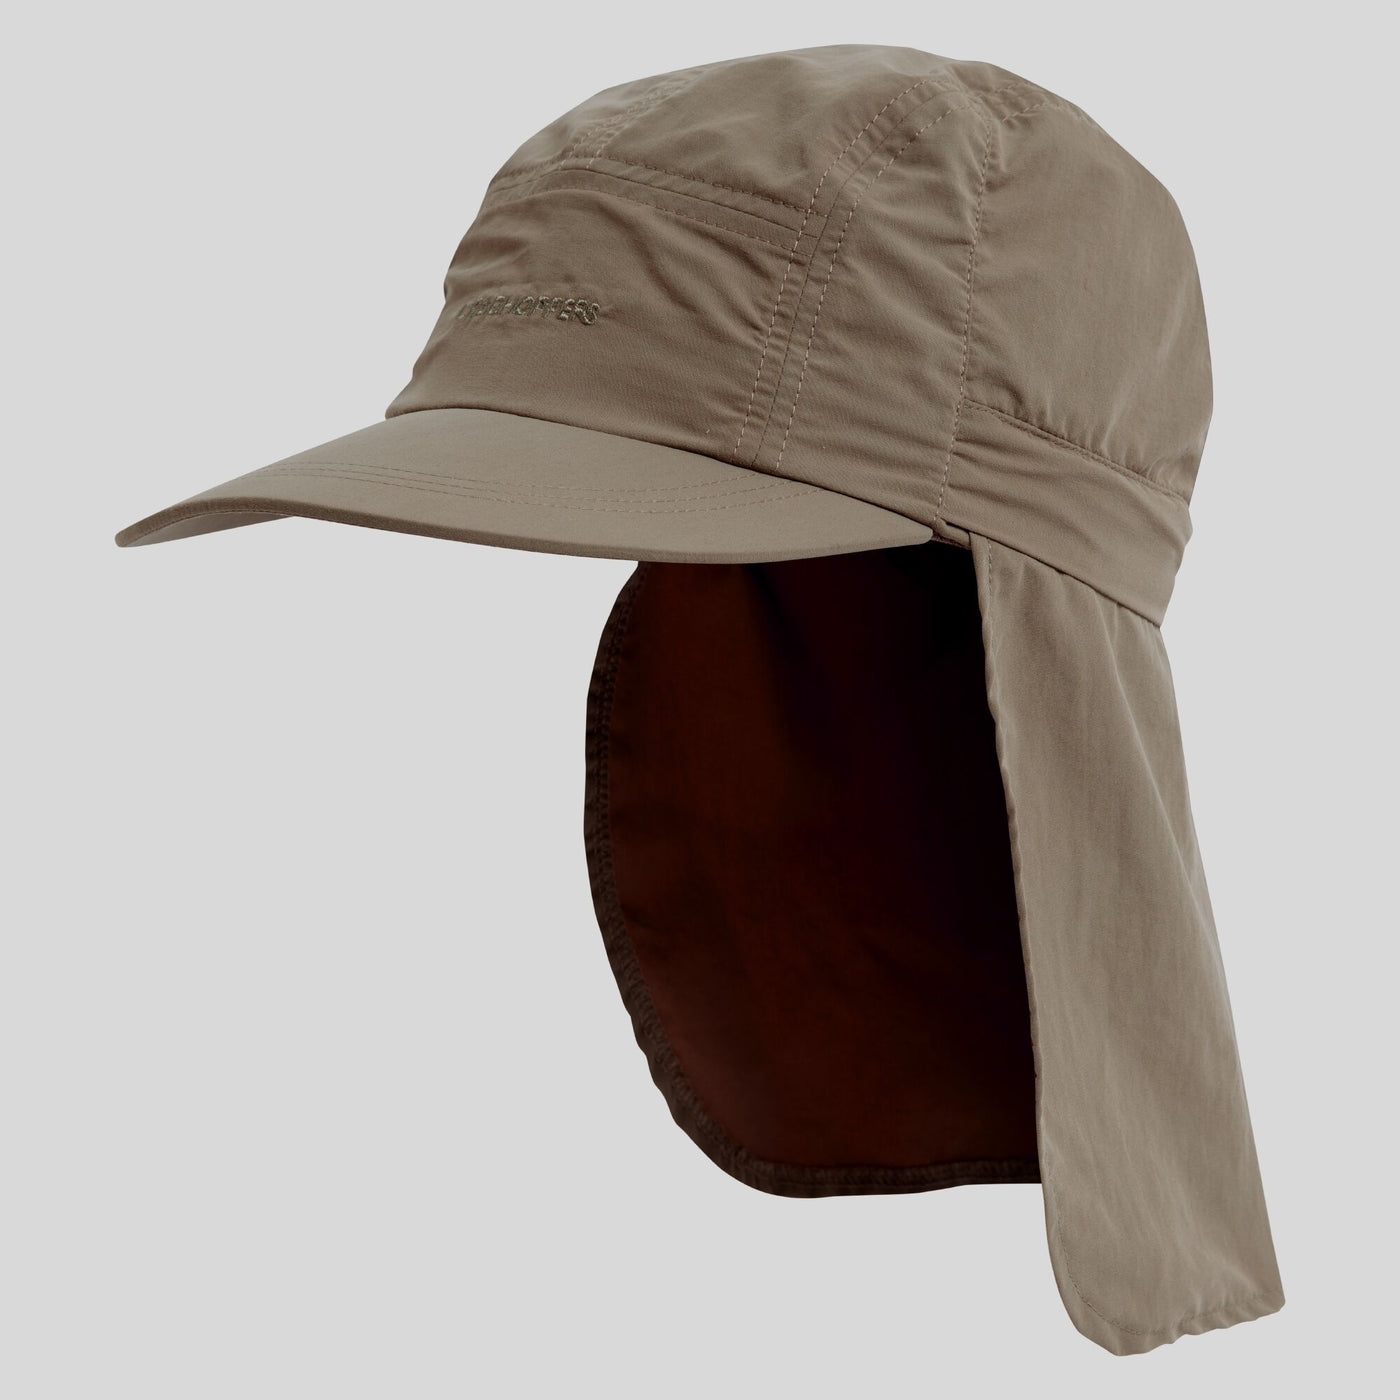 Nosilife Desert hat